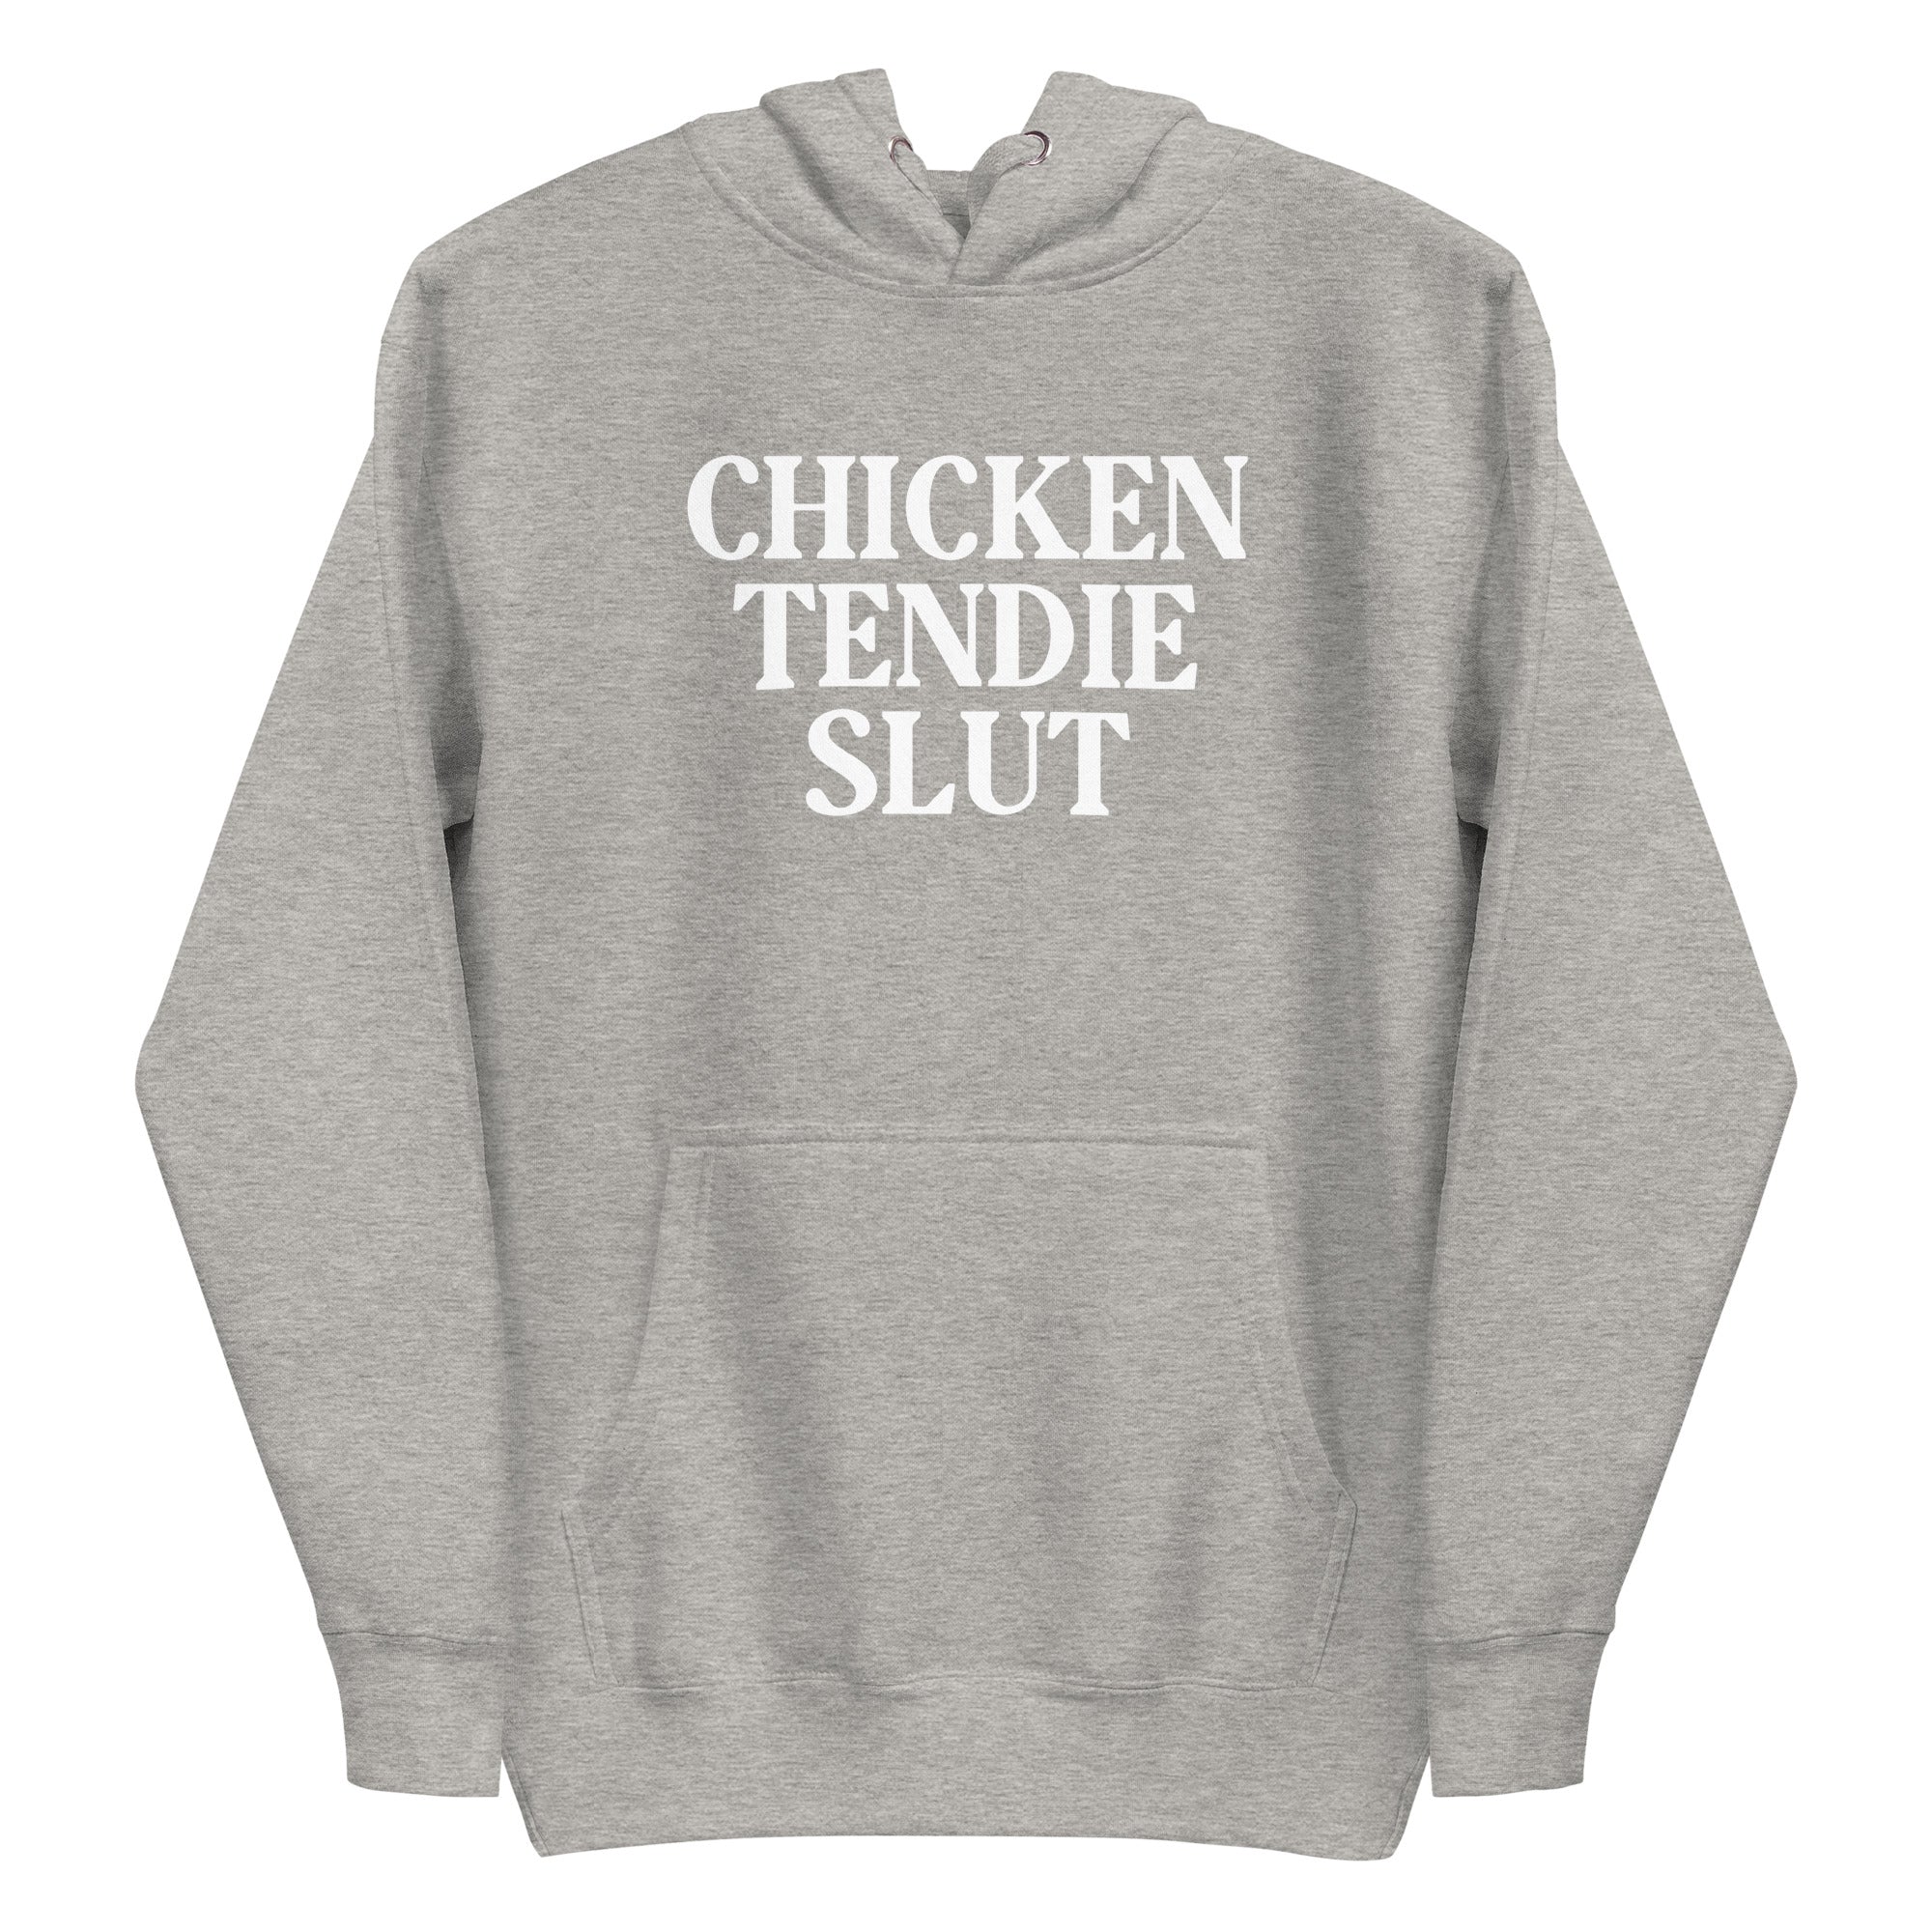 Mike Sorrentino Chicken Tendies Slut Hoodie